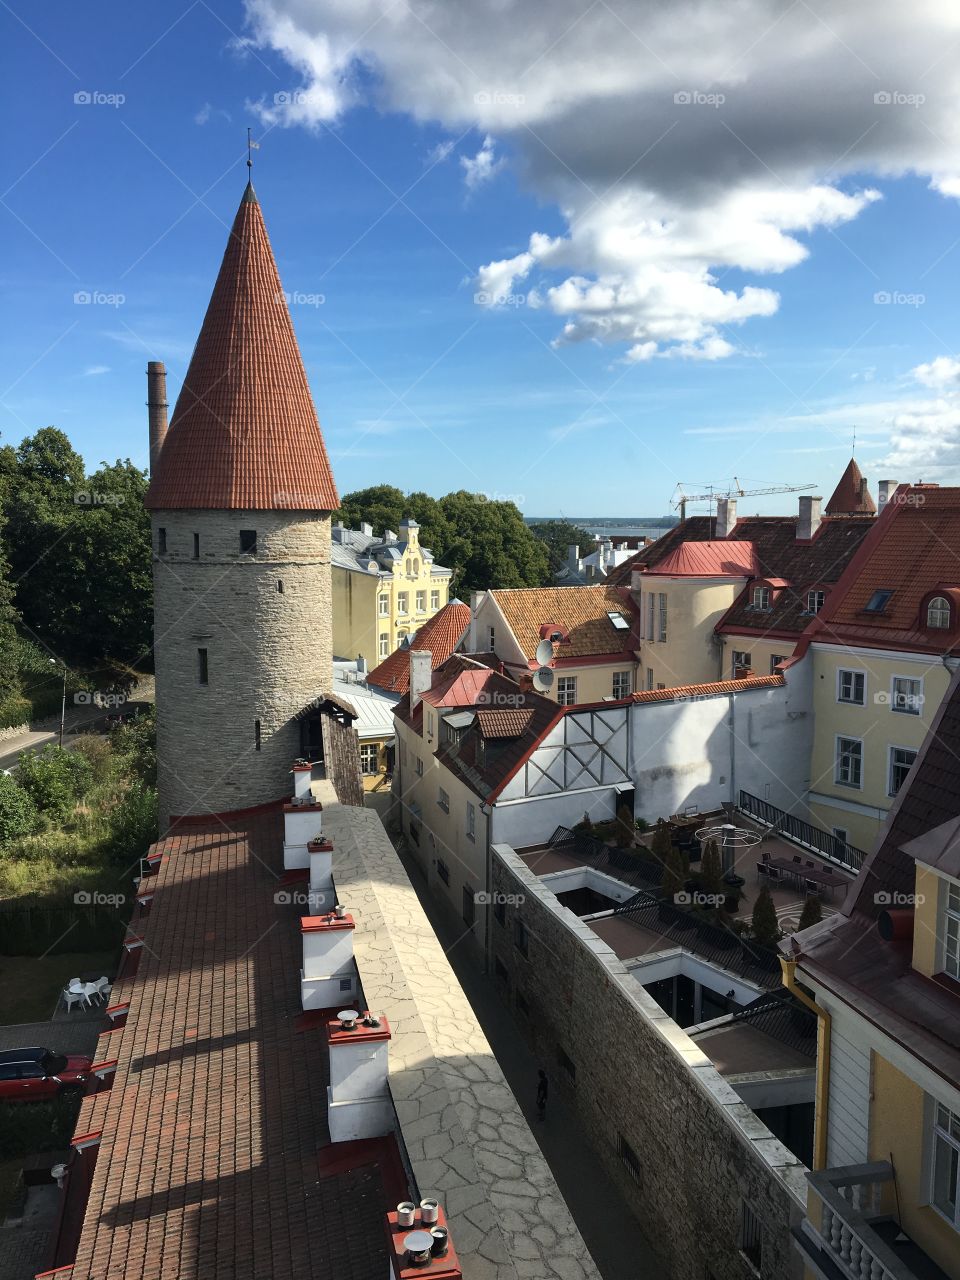 Old town Tallinn walls 